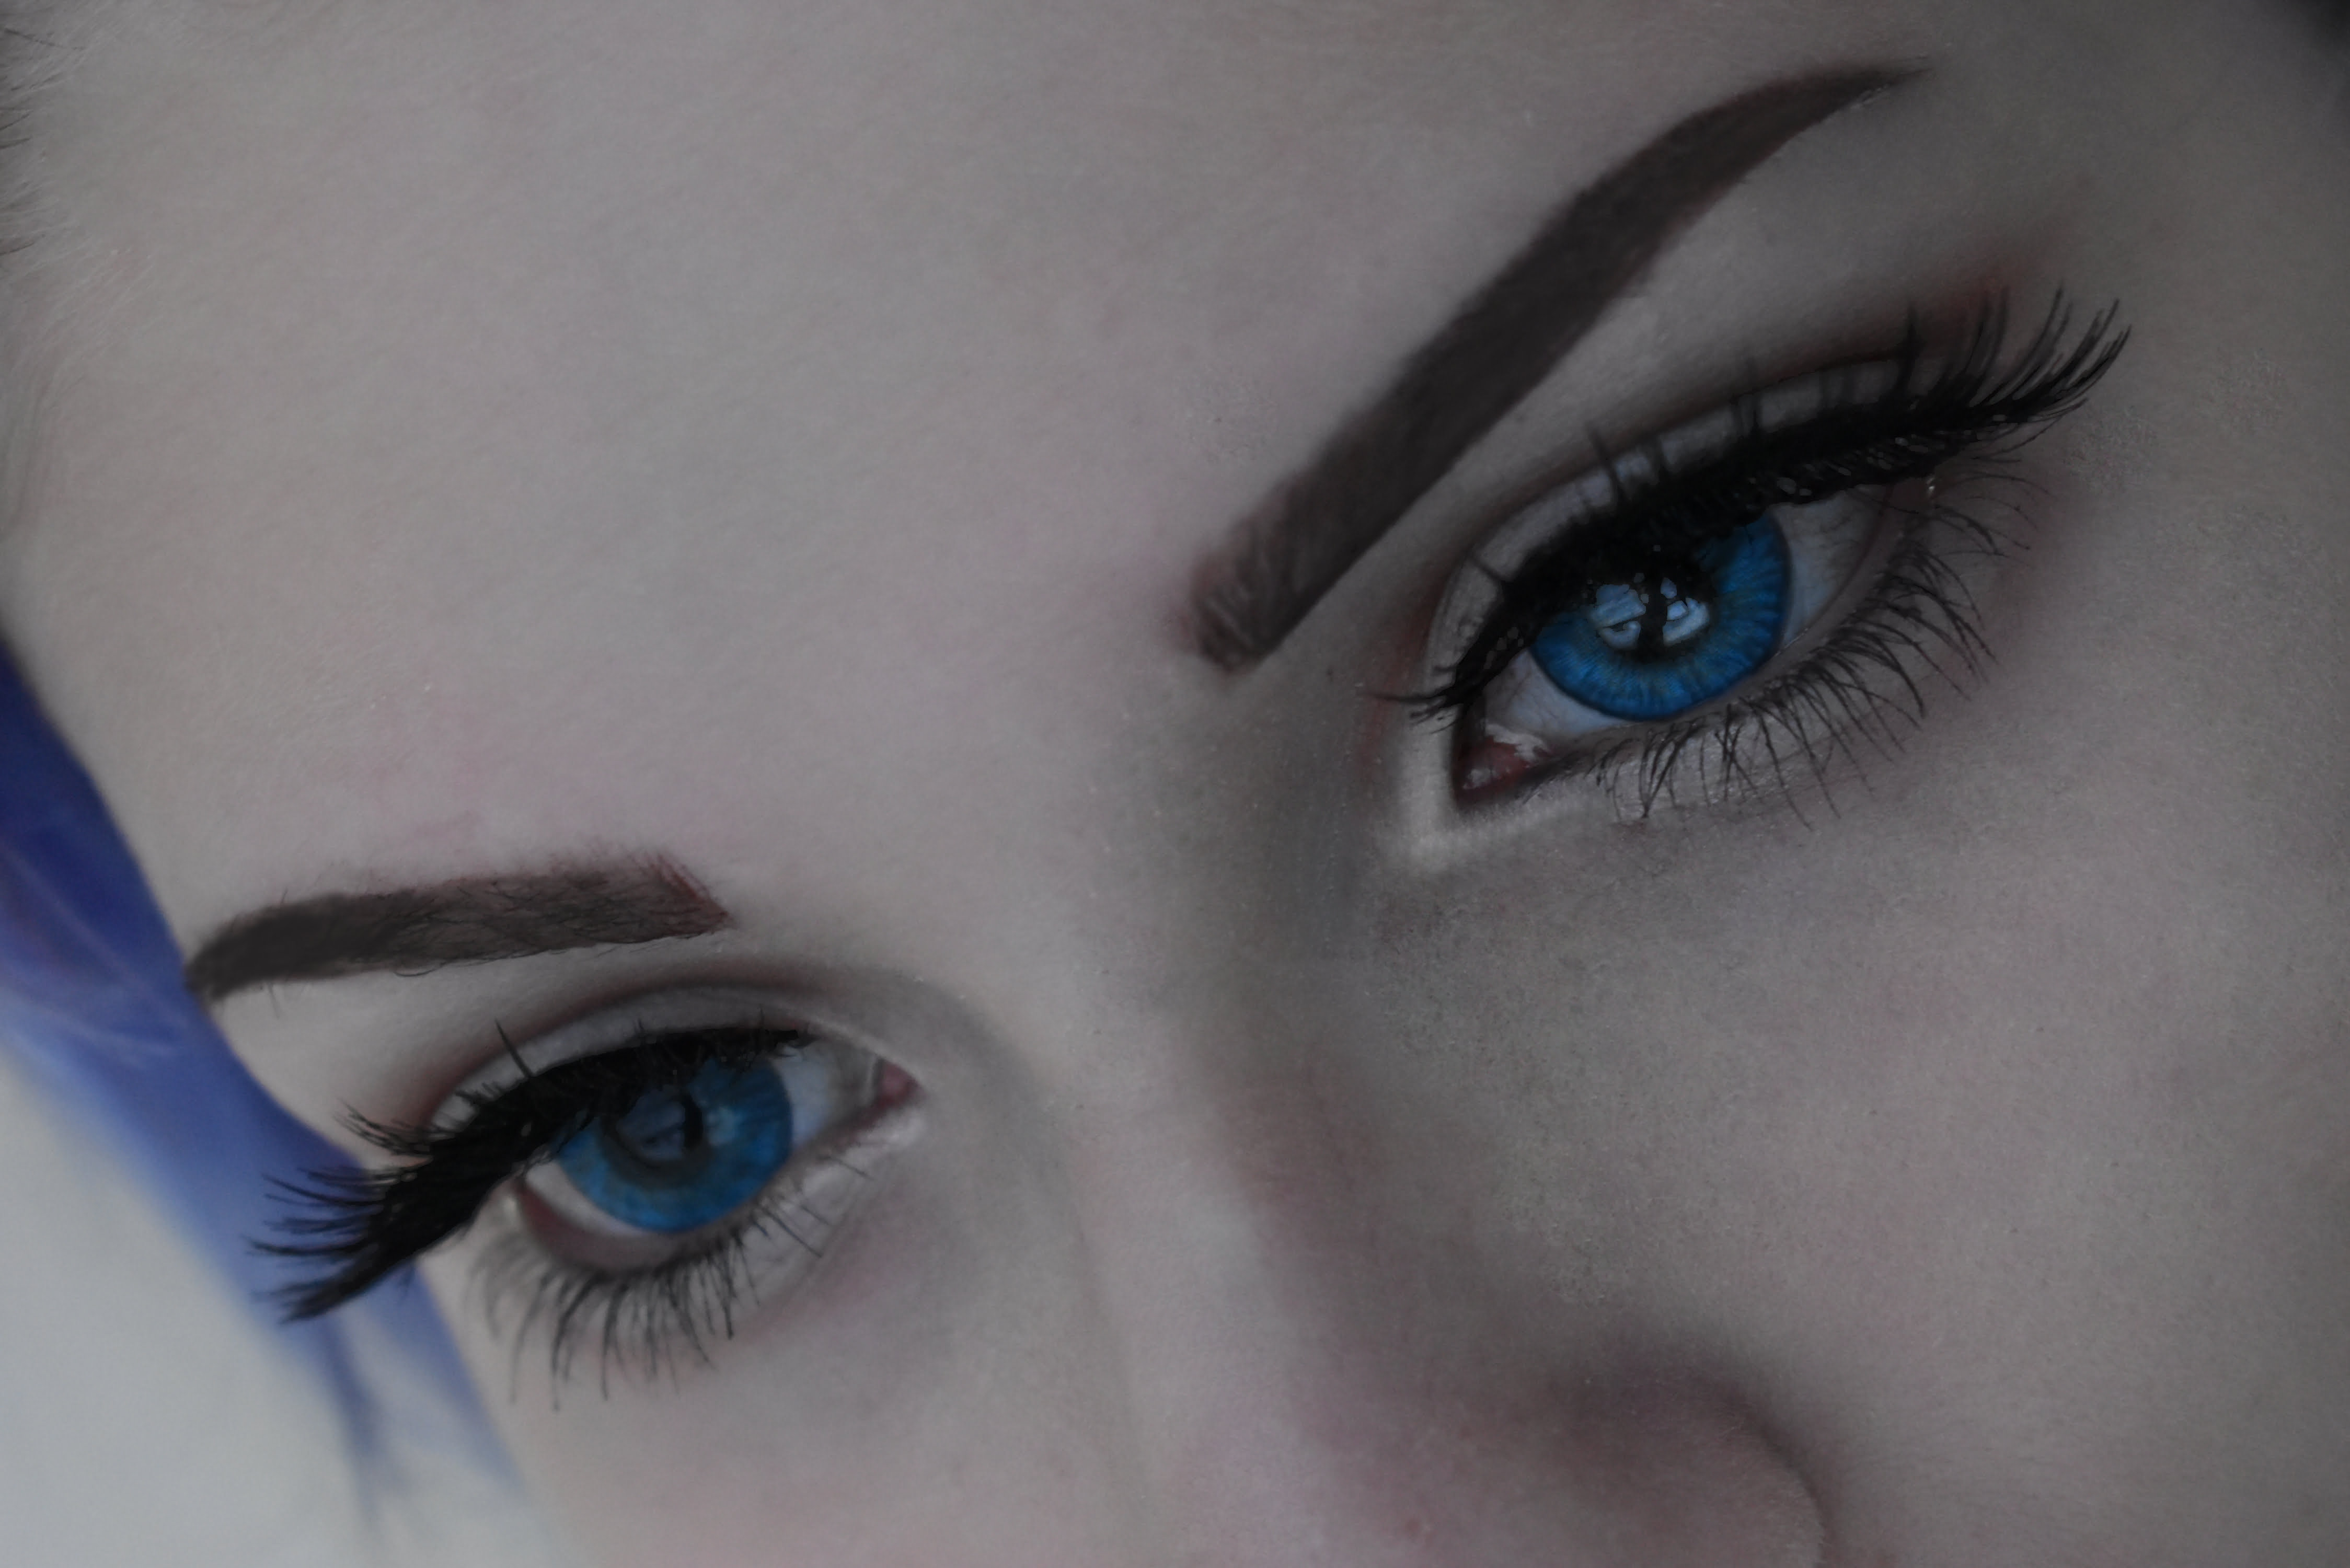 Western eyes frozen blue